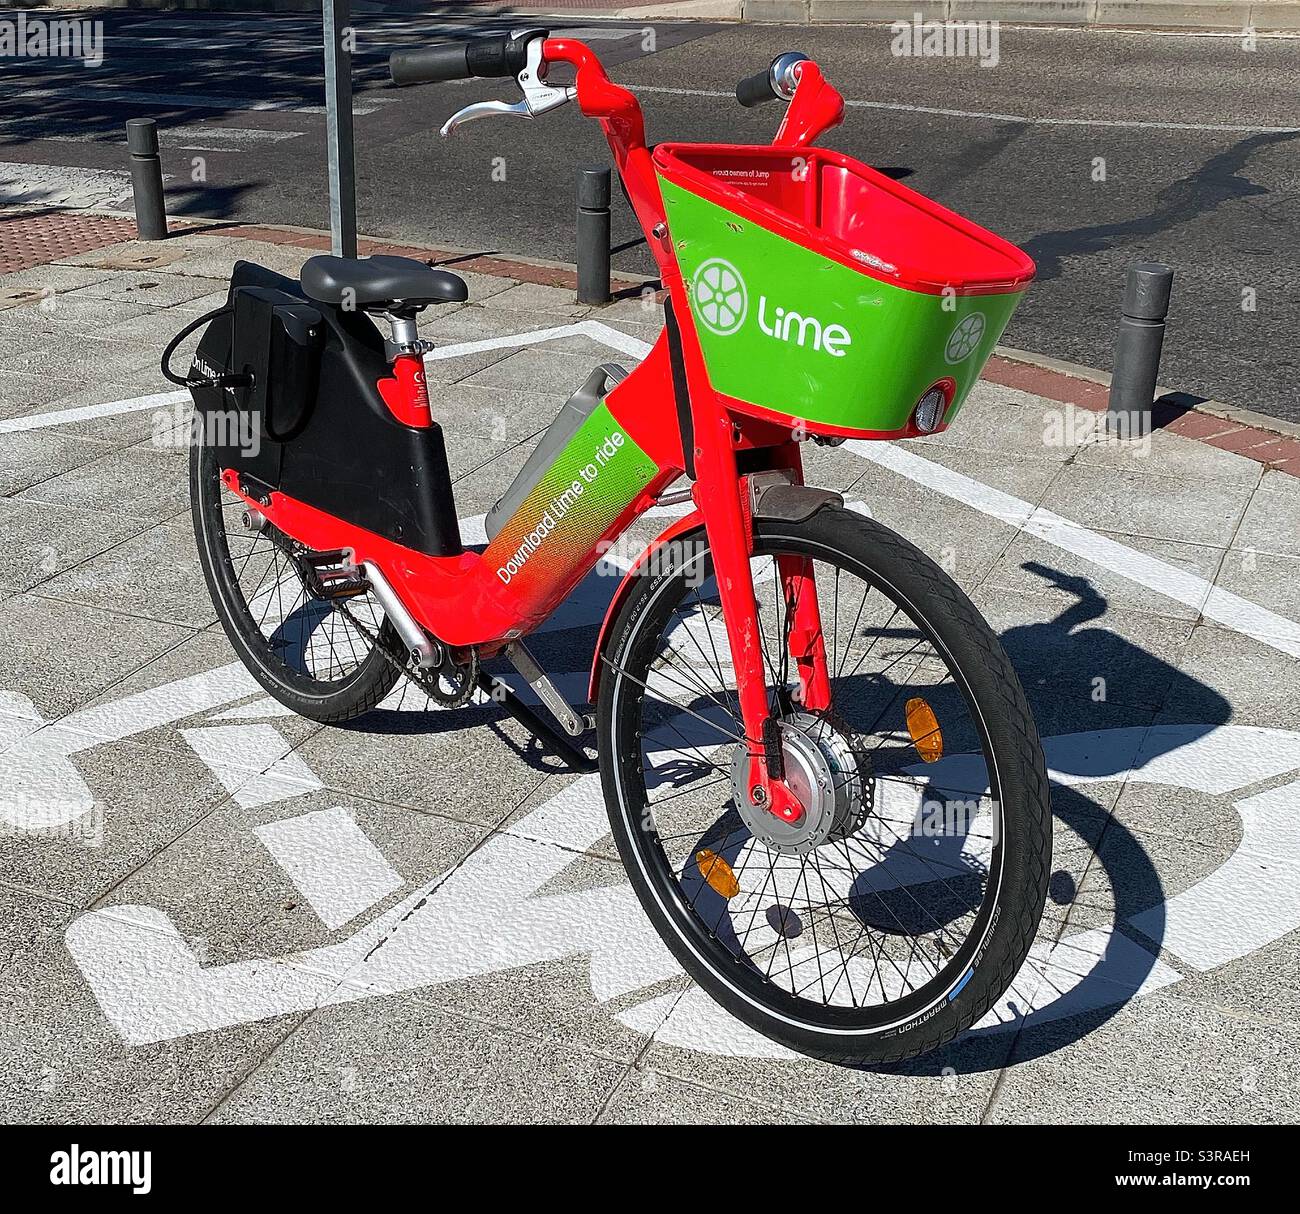 Ein E-Bike aus Limone wird auf einem dafür vorgesehenen Platz abgestellt, damit das nächste Mitglied es nutzen kann. Elektrofahrräder werden als Alternative zu Autos immer beliebter für kurze Fahrten. Stockfoto